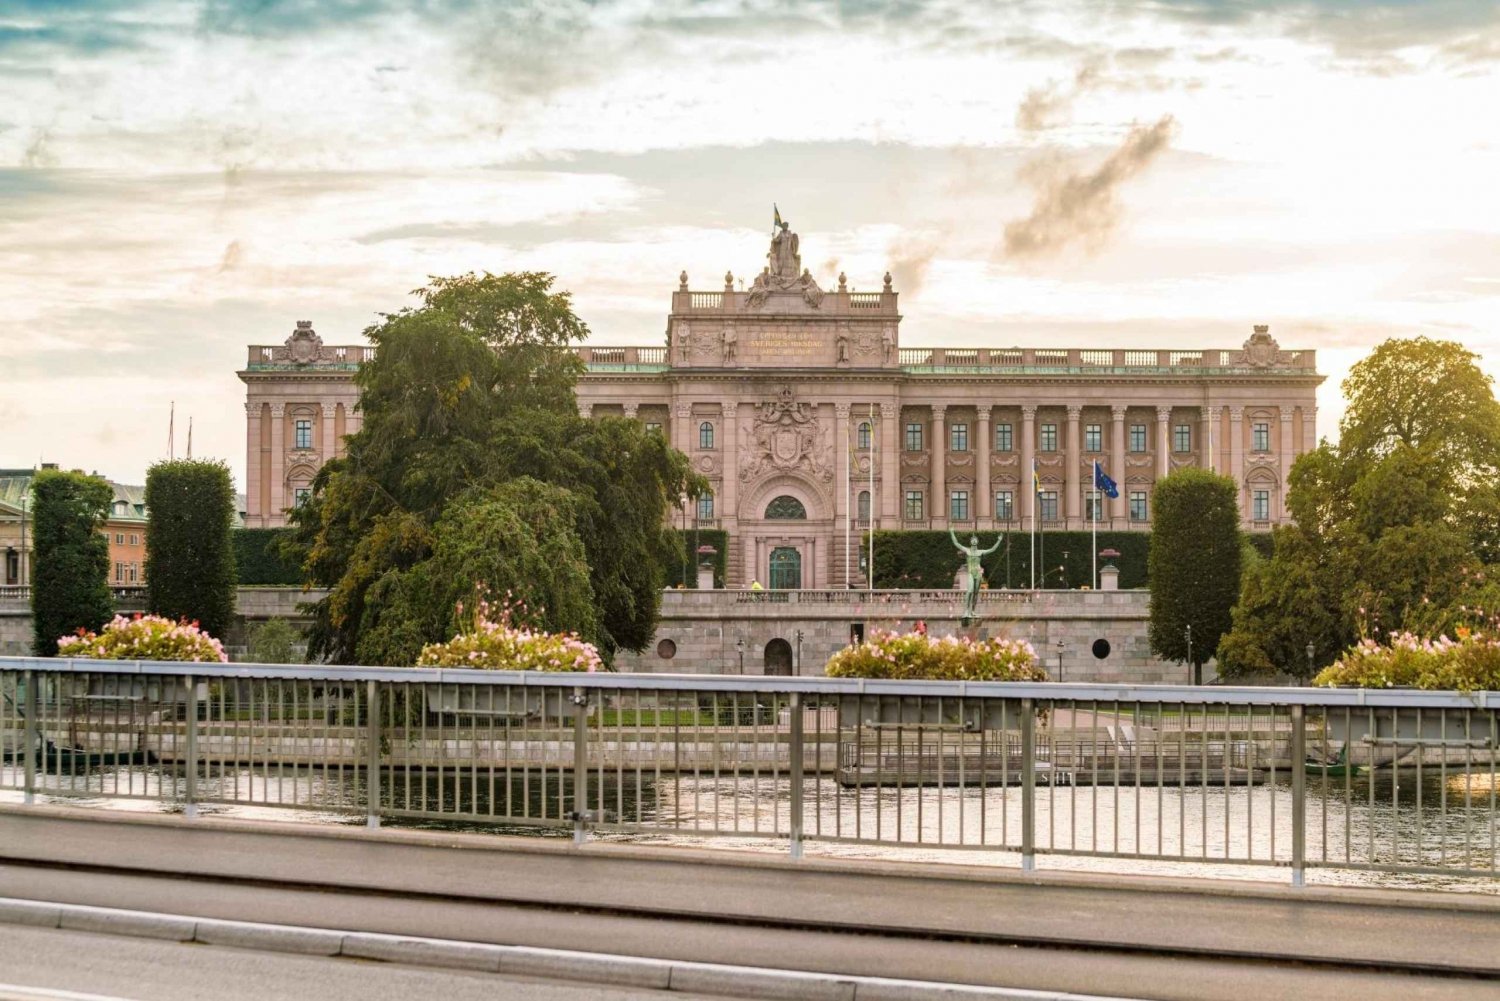 Visita sin colas a los Museos del Palacio Real de Estocolmo en Gamla Stan